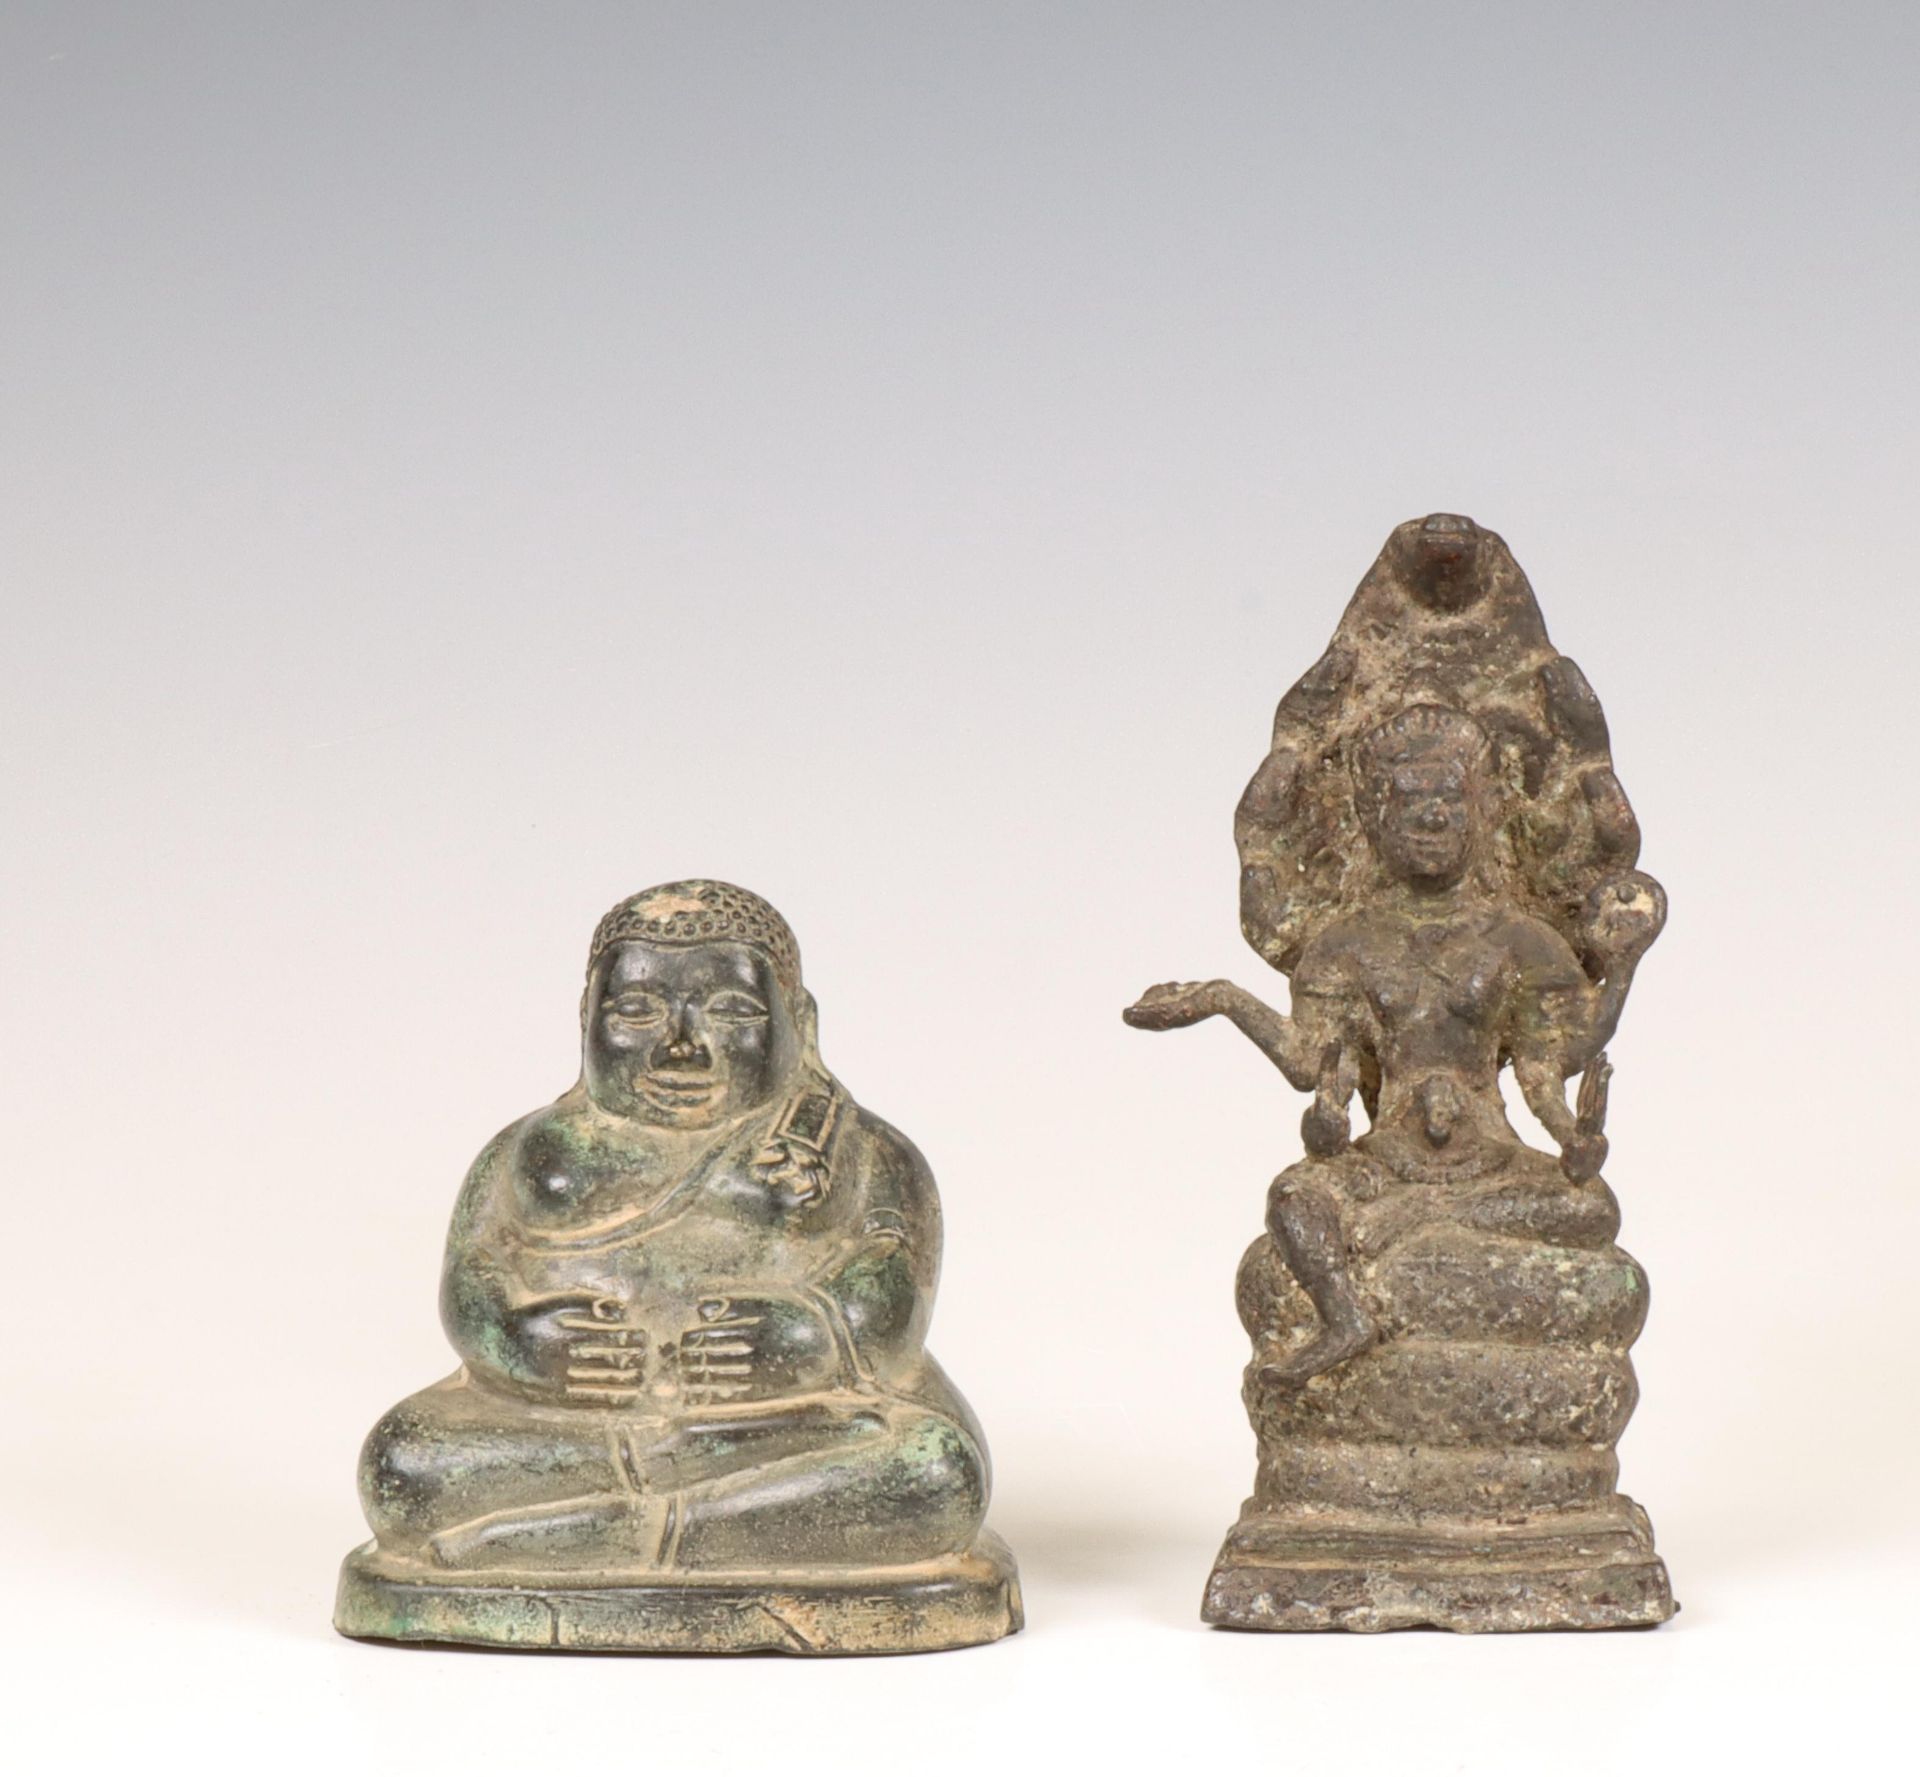 Thailand, a bronze scultpure of a seated Sangkachai Buddha, ca. 19th century and a Buddha Muchalinda